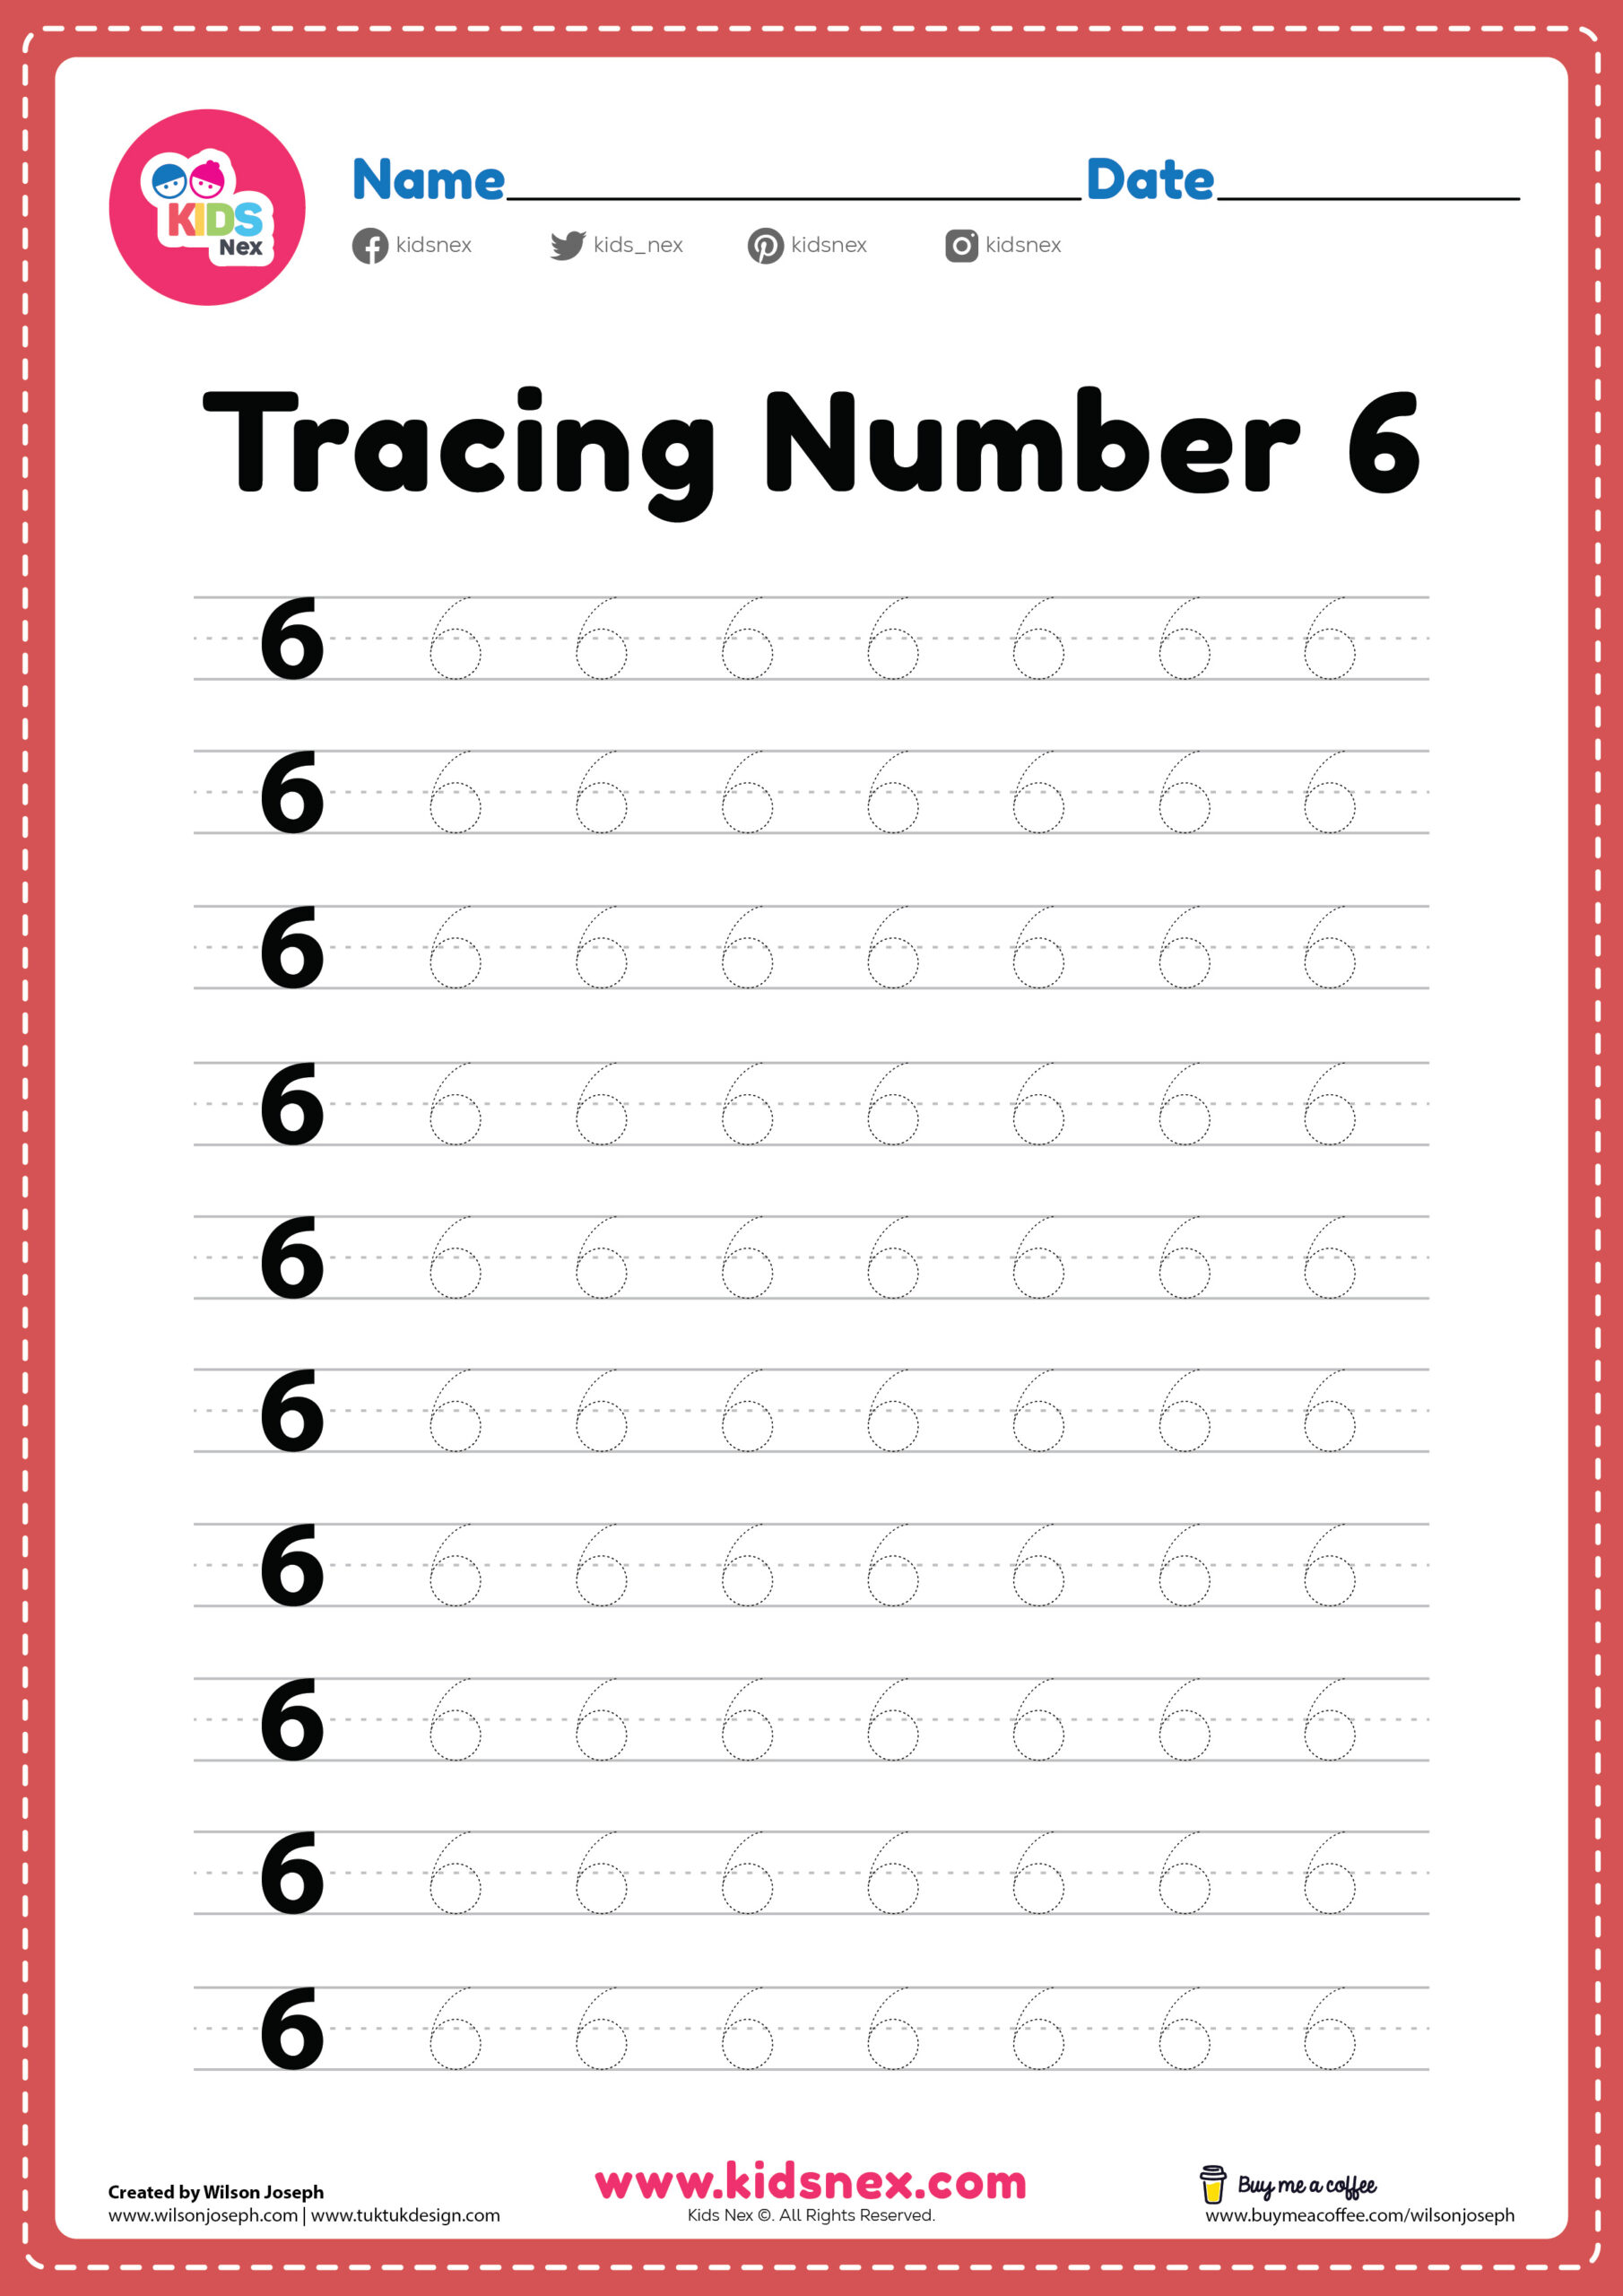 tracing-number-6-worksheet-preschool-free-printable-pdf